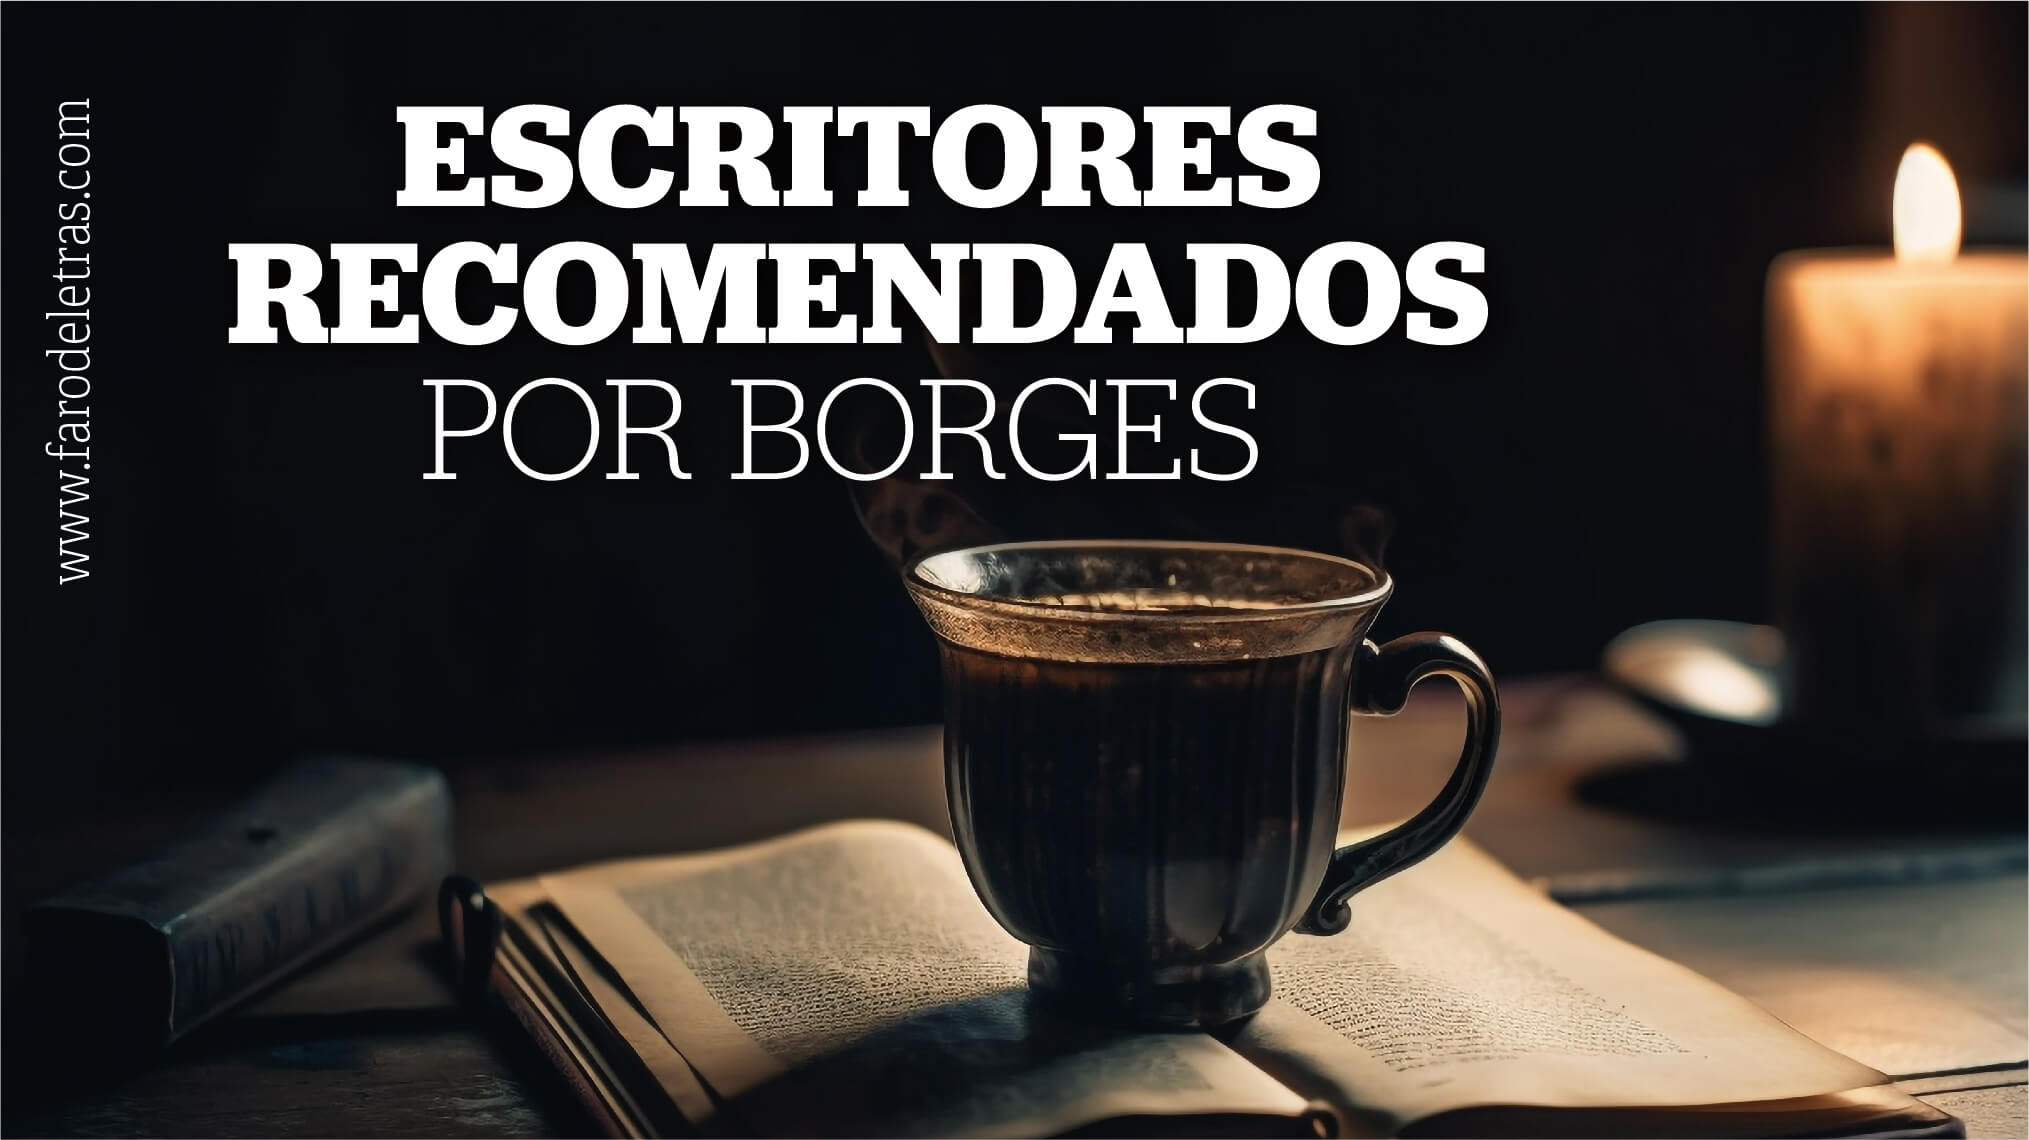 Escritores recomendados por Borges